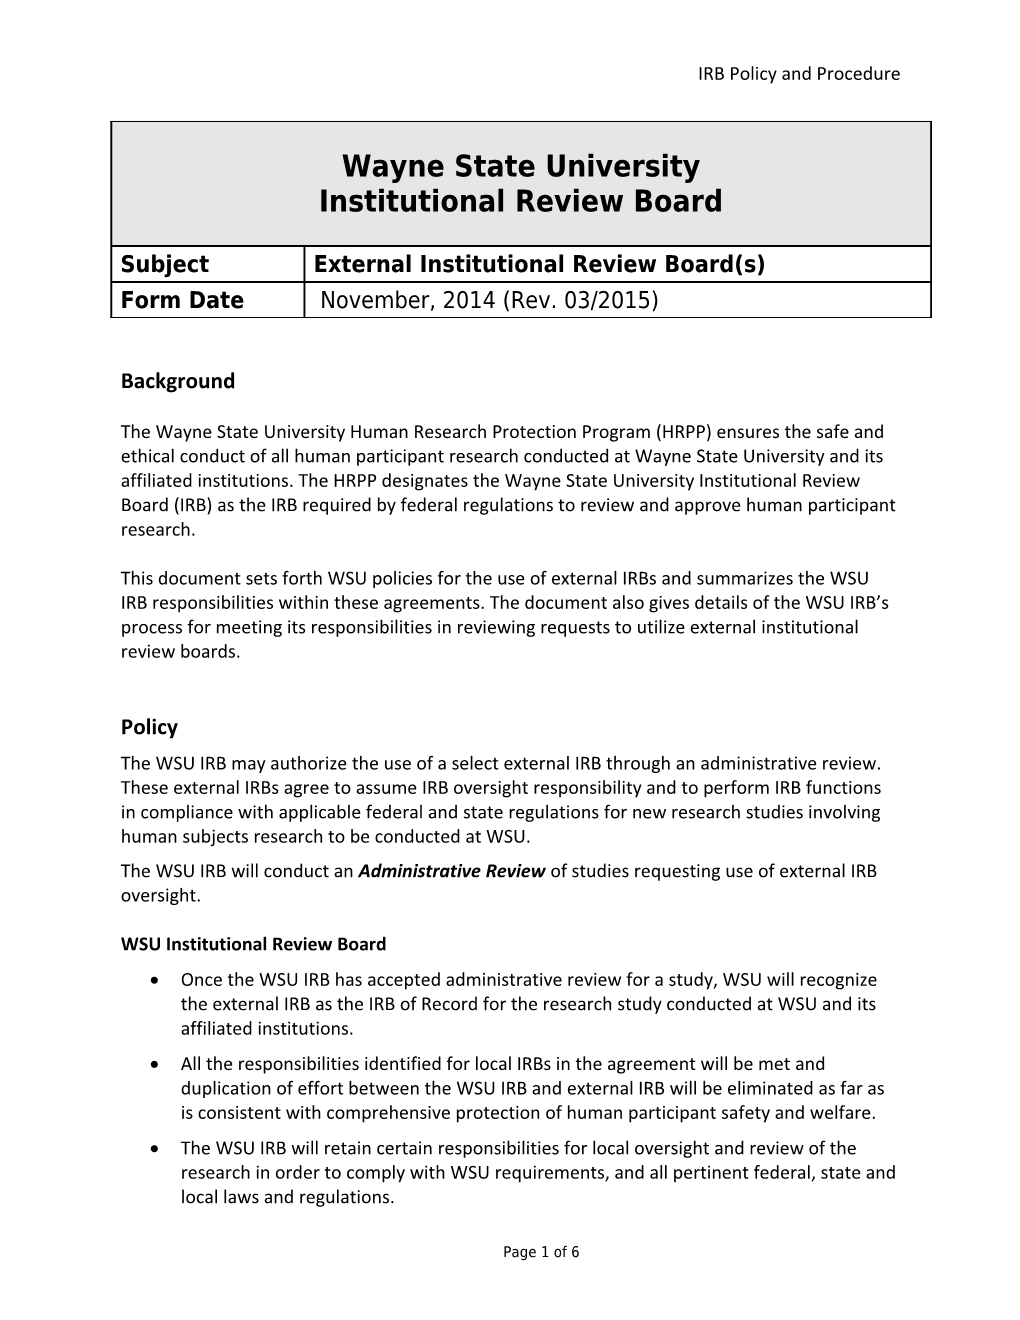 WSU Institutional Review Board